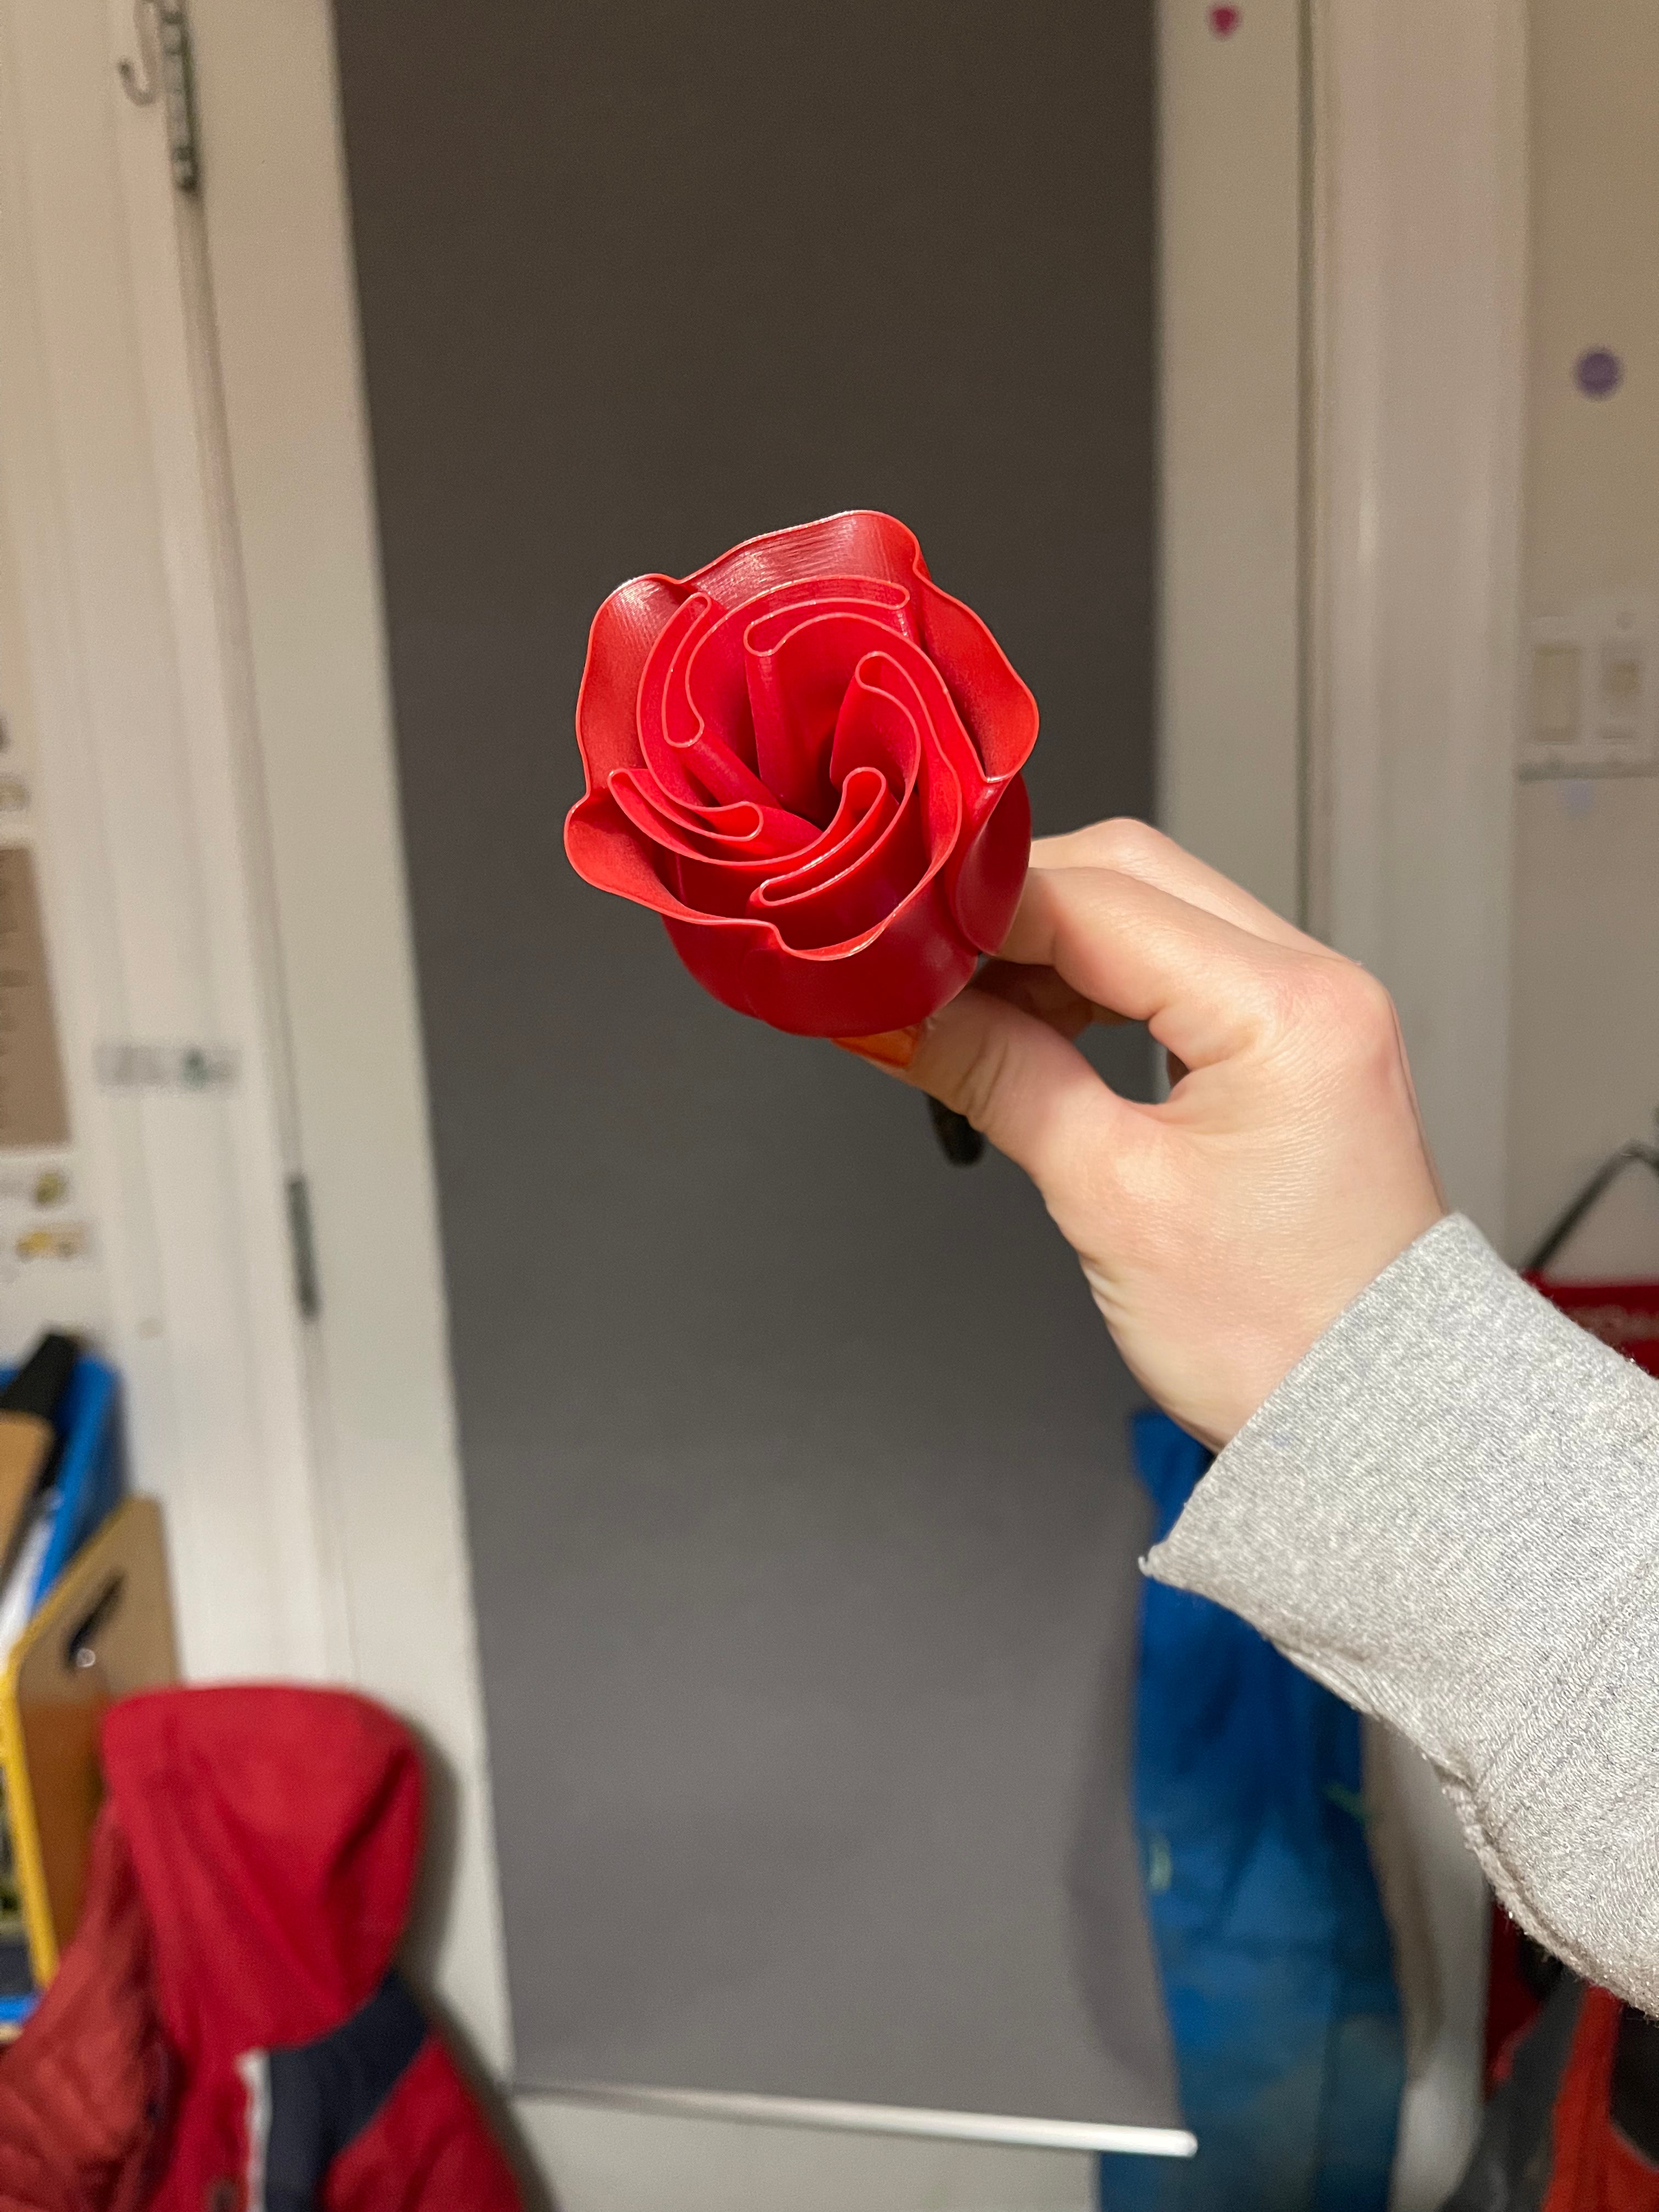 3D Printed Rose - Vase design